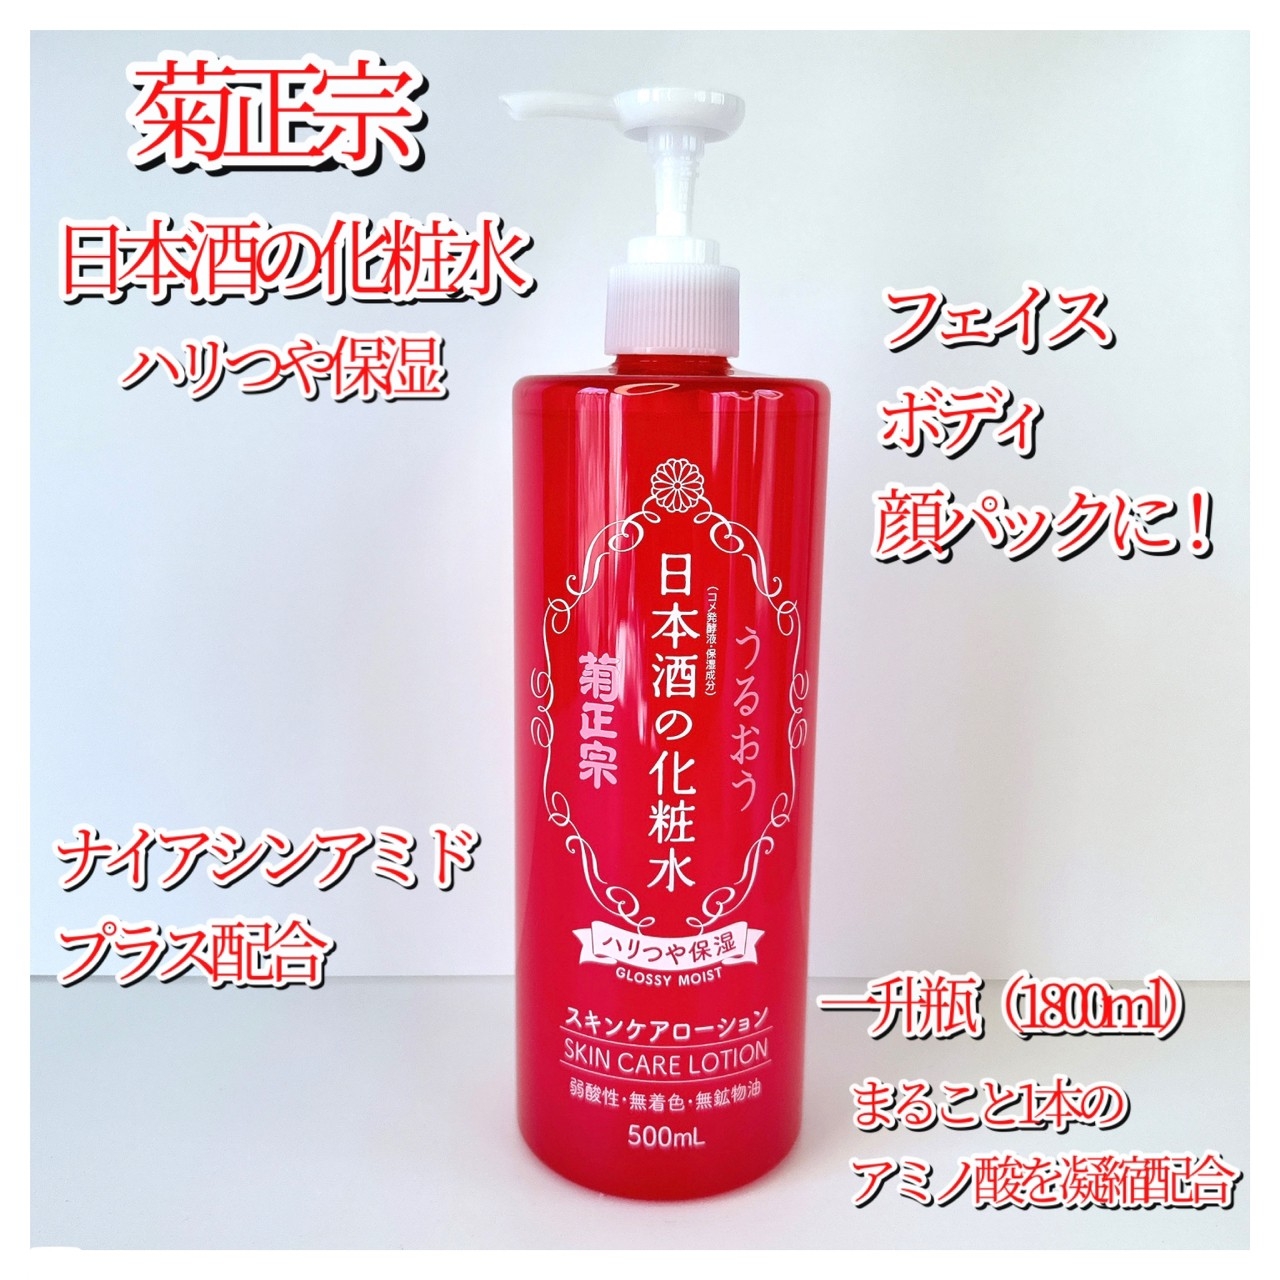 菊正宗(キクマサムネ) 日本酒の化粧水 ハリつや保湿を使ったkana_cafe_timeさんのクチコミ画像1